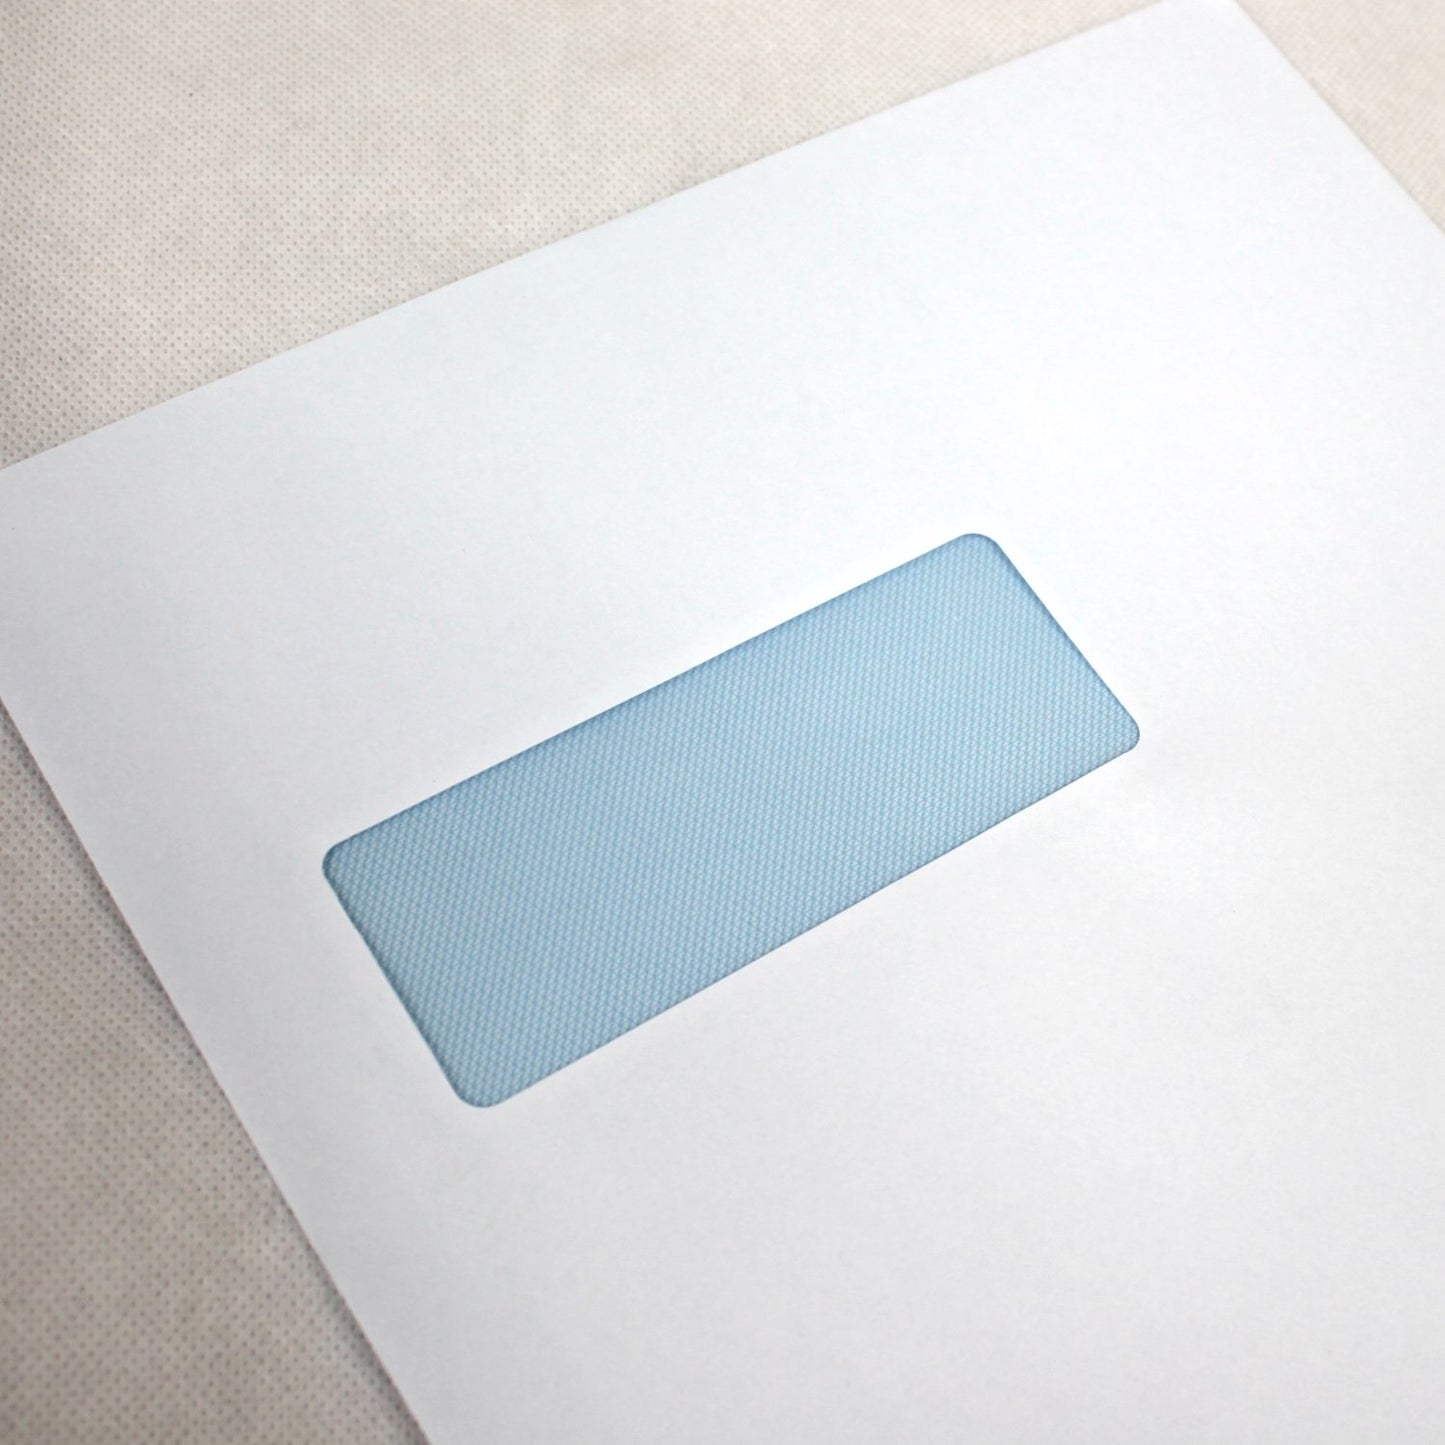 324x229mm C4 White Gummed Envelopes (Window 40x105mm)